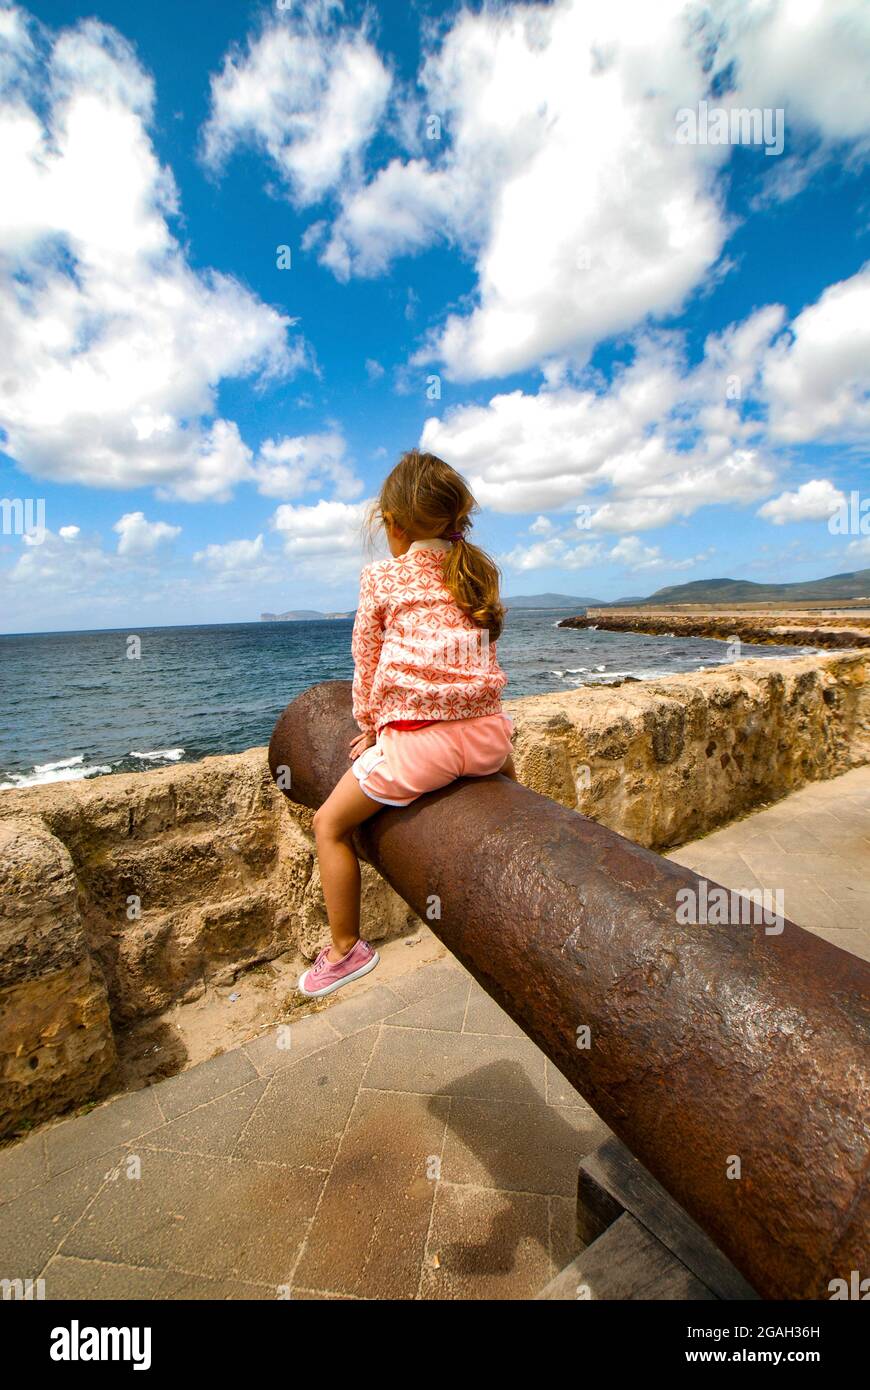 Alghero, ein kleines Mädchen, das auf einem alten Canno am Marco Polo Defensive Shield sitzt, kopiert ein mittelalterliches Katapult auf der Promenade, die auf die Uferpromenade der Insel Sard blickt Stockfoto